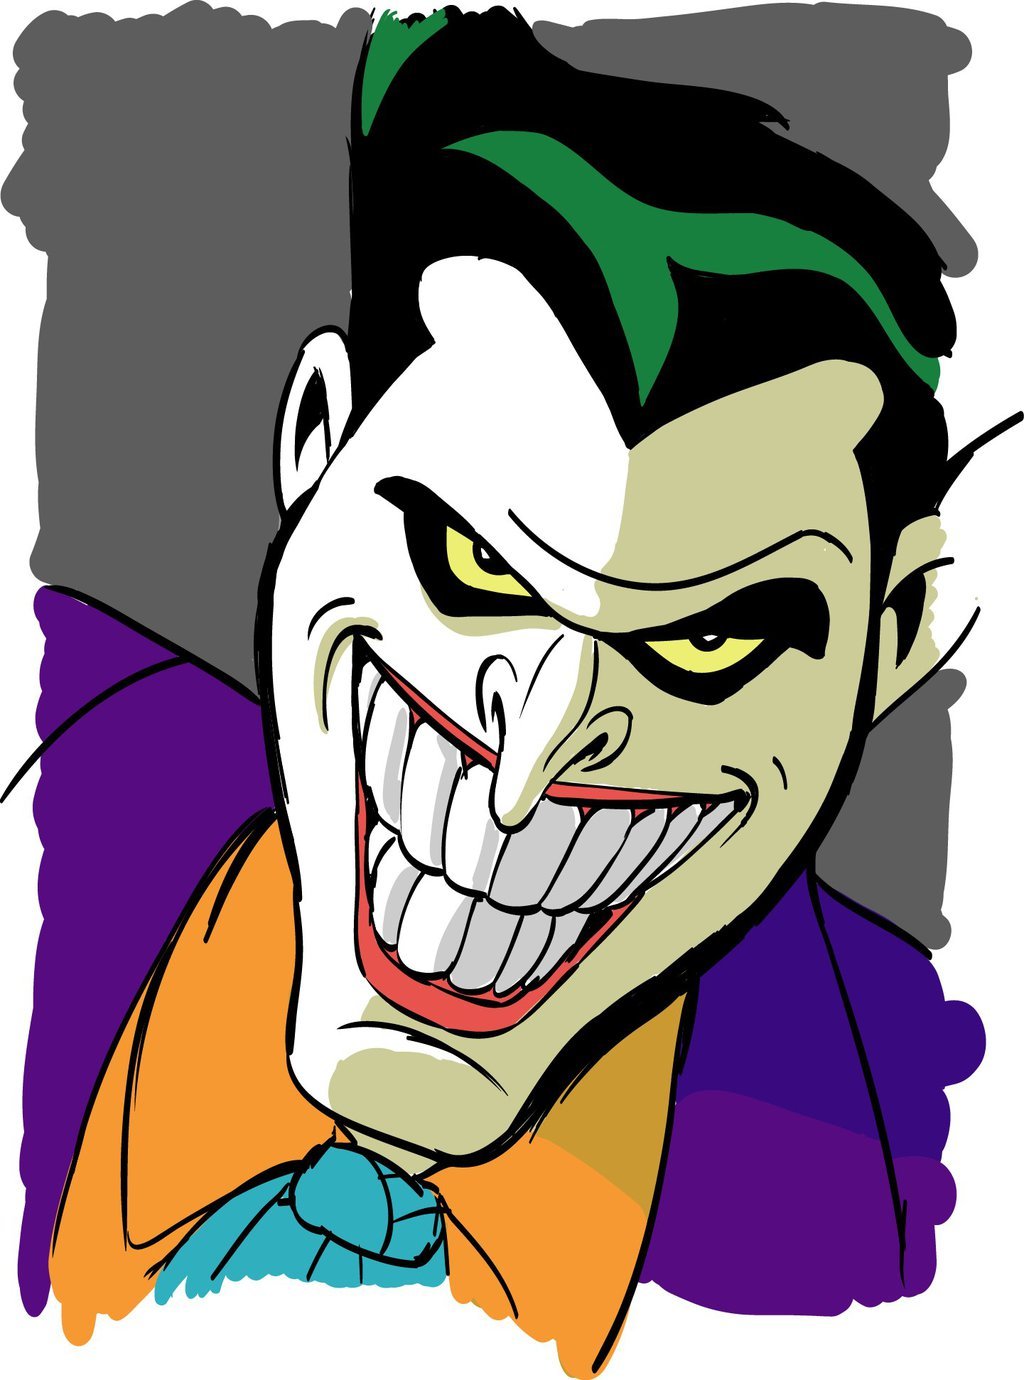 Joker clipart 2 » Clipart Portal.